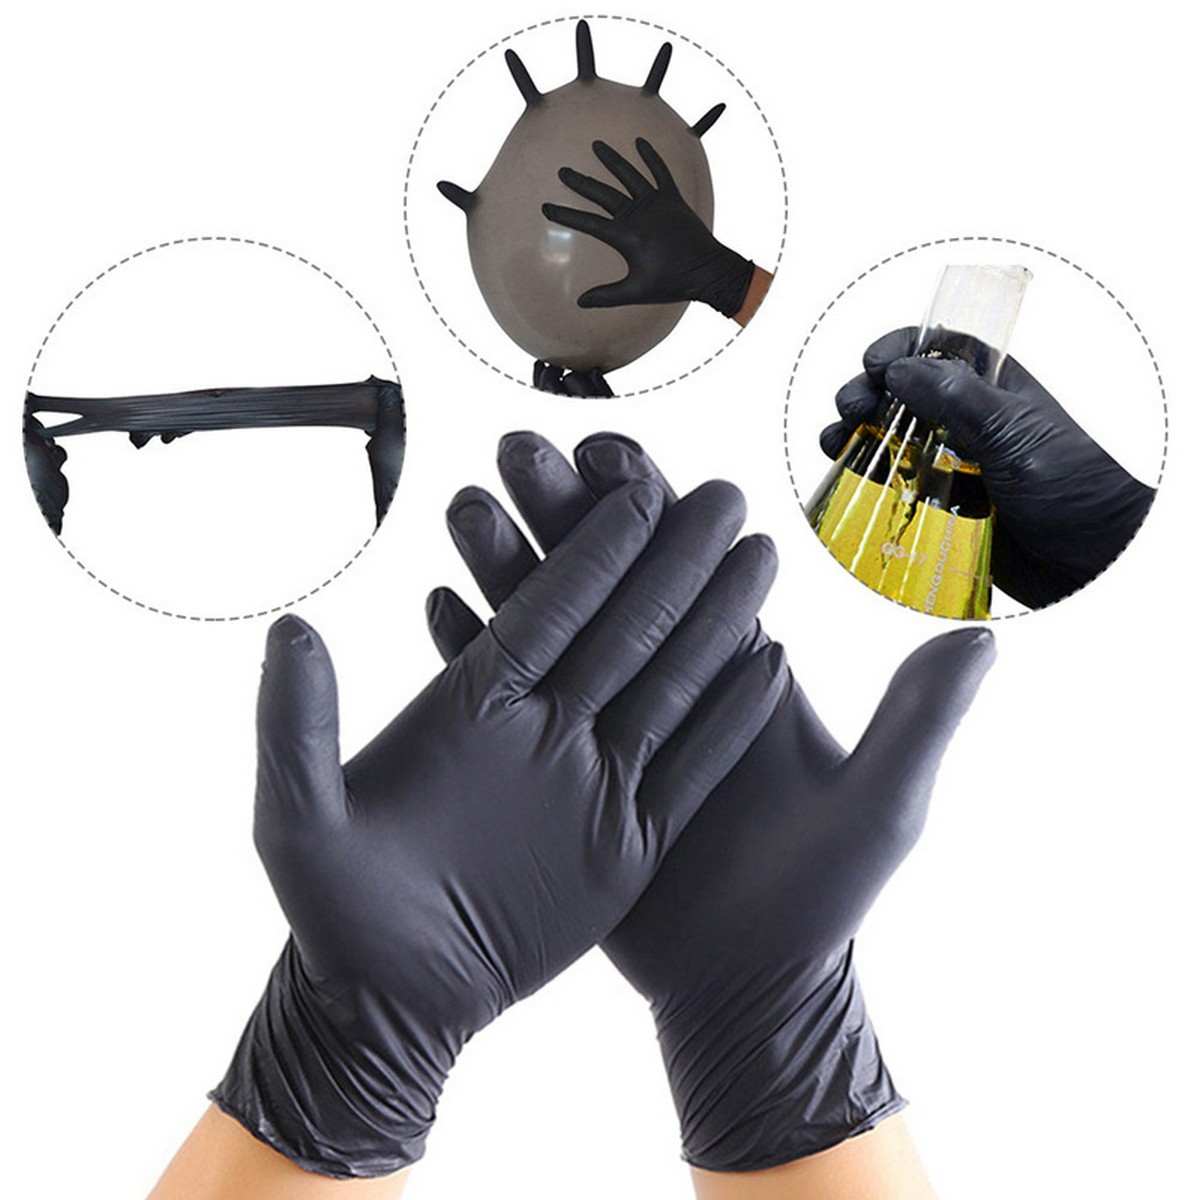 γάντια από καουτσούκ νιτριλικό προστατευτικό μαύρο